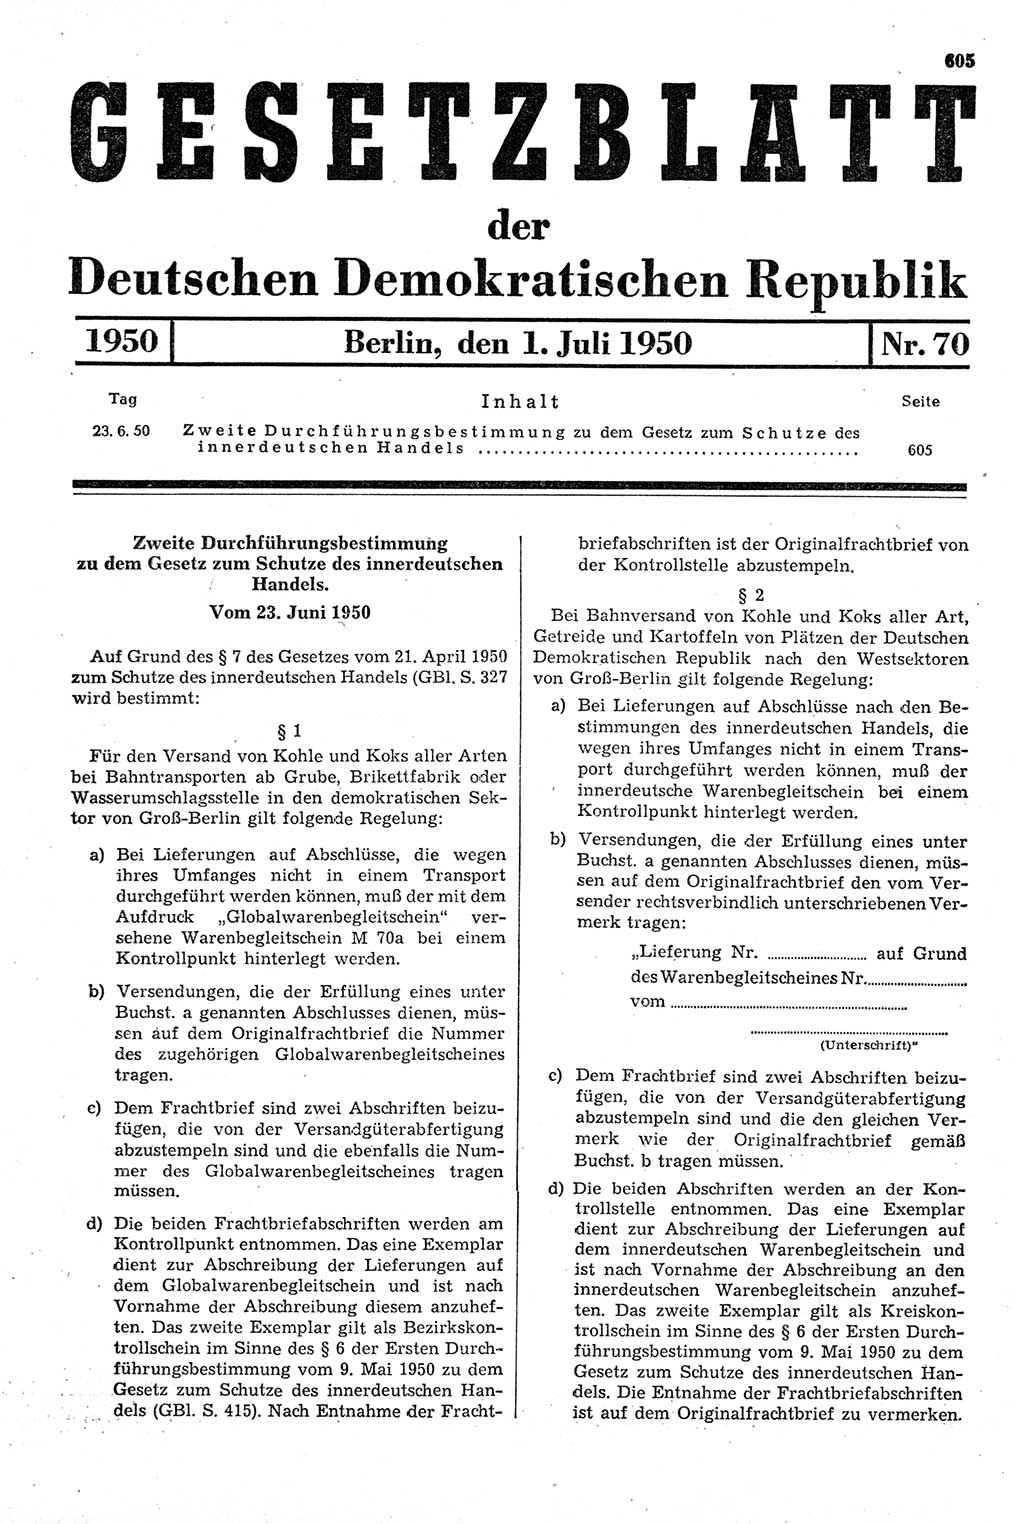 Gesetzblatt (GBl.) der Deutschen Demokratischen Republik (DDR) 1950, Seite 605 (GBl. DDR 1950, S. 605)